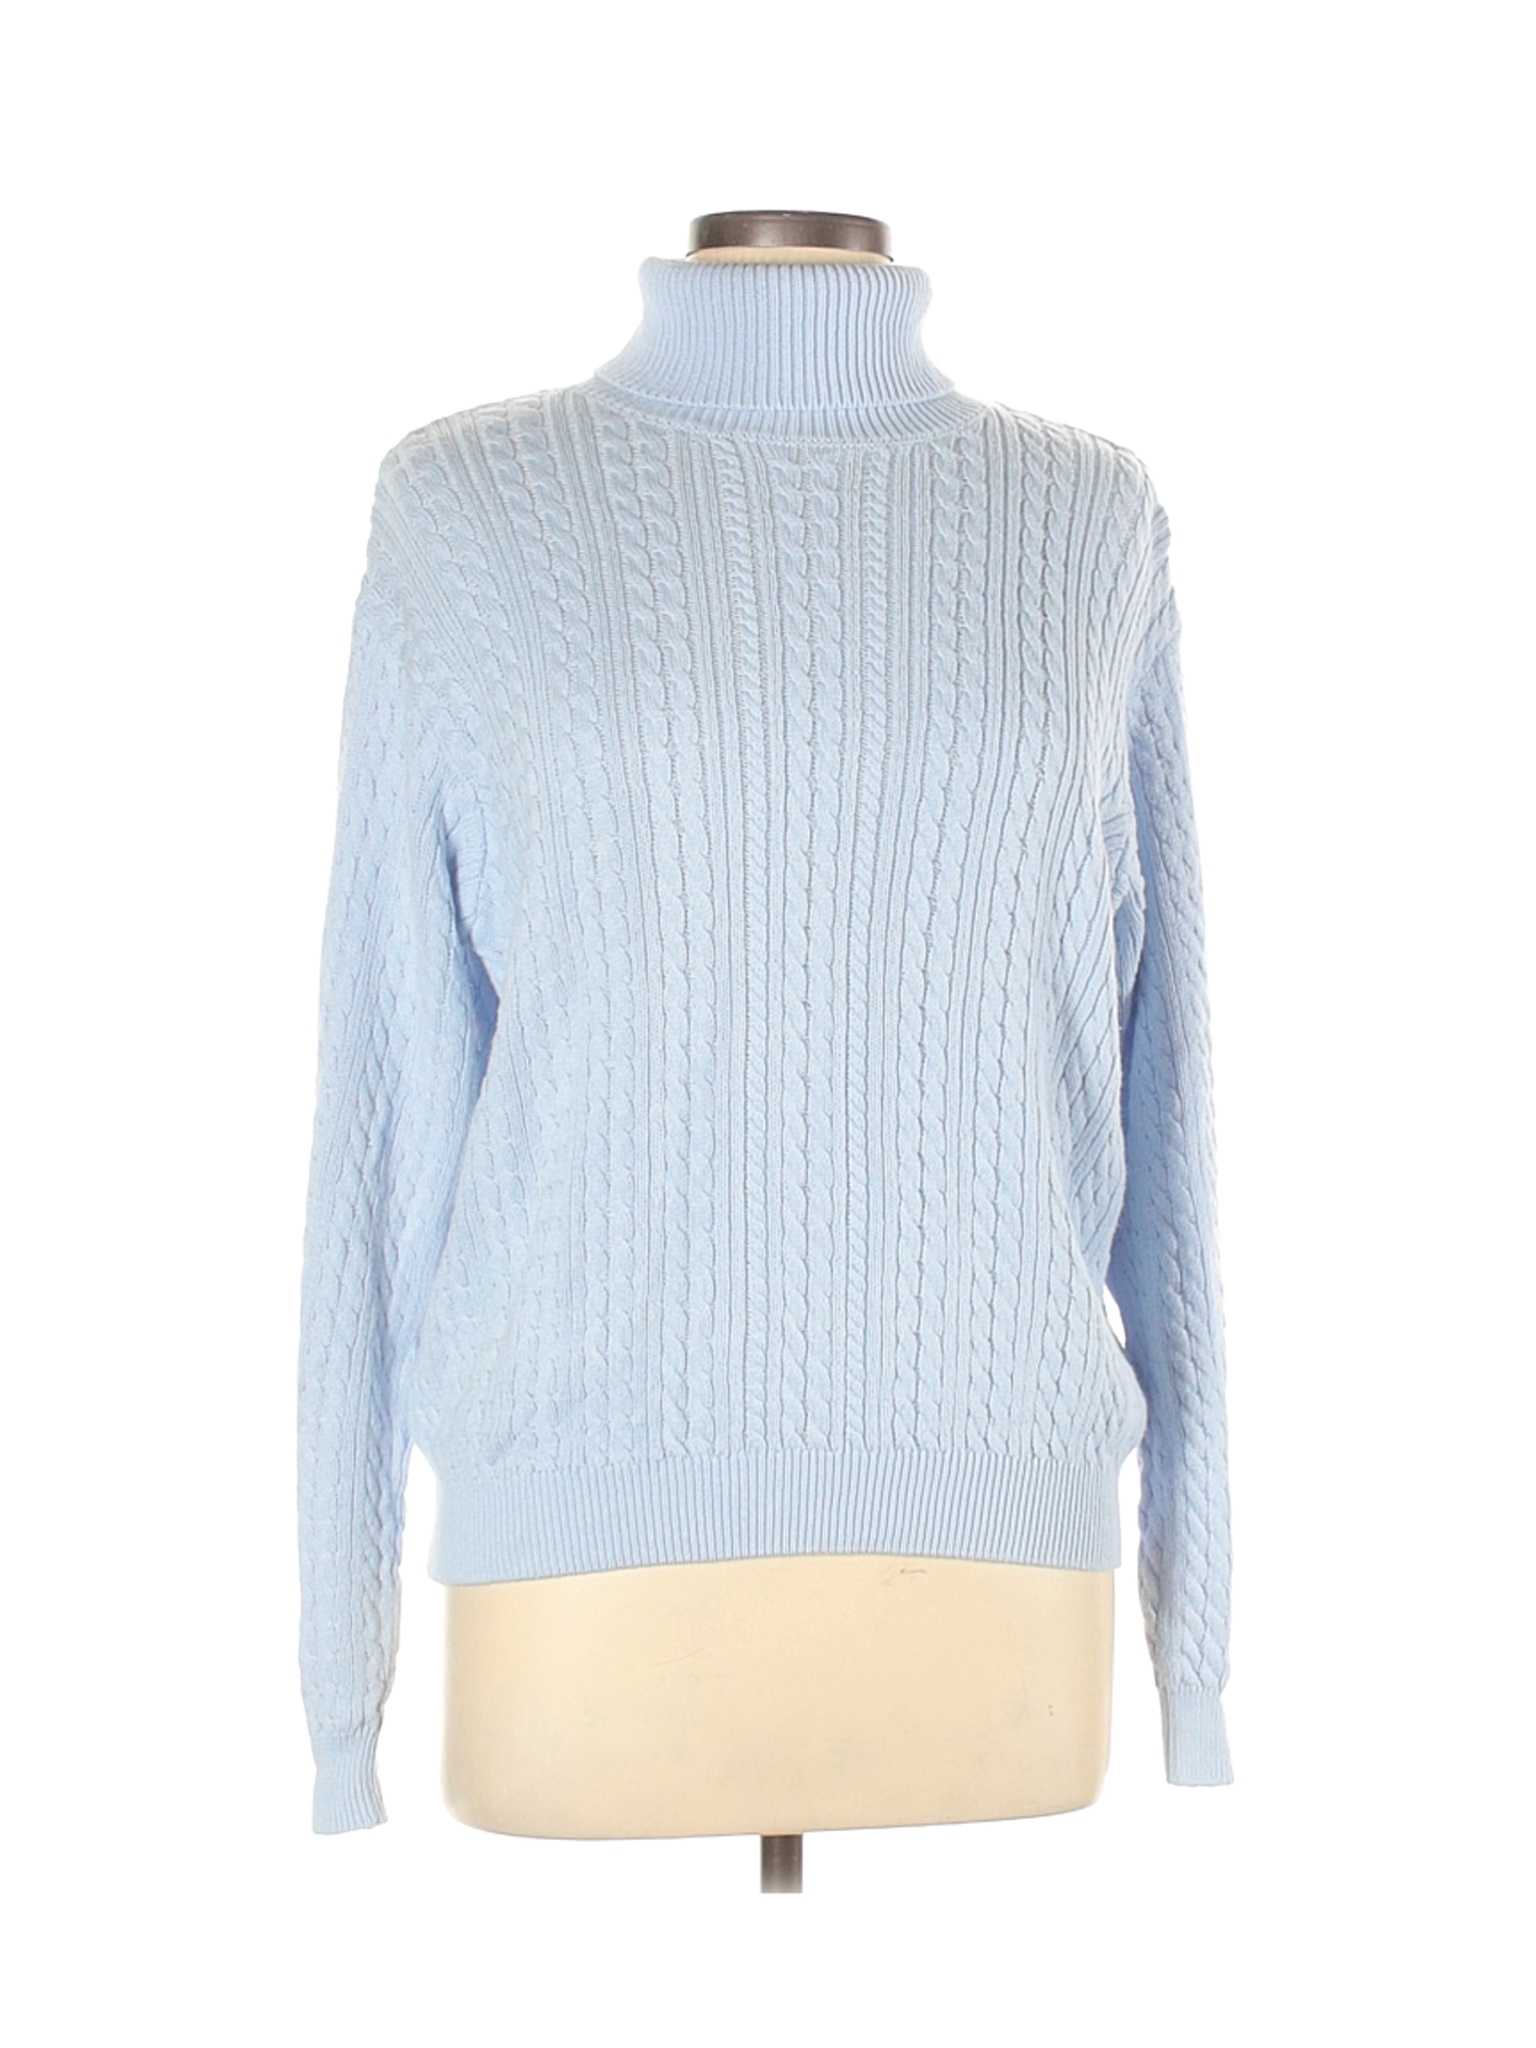 Jeanne Pierre Women Blue Turtleneck Sweater L | eBay